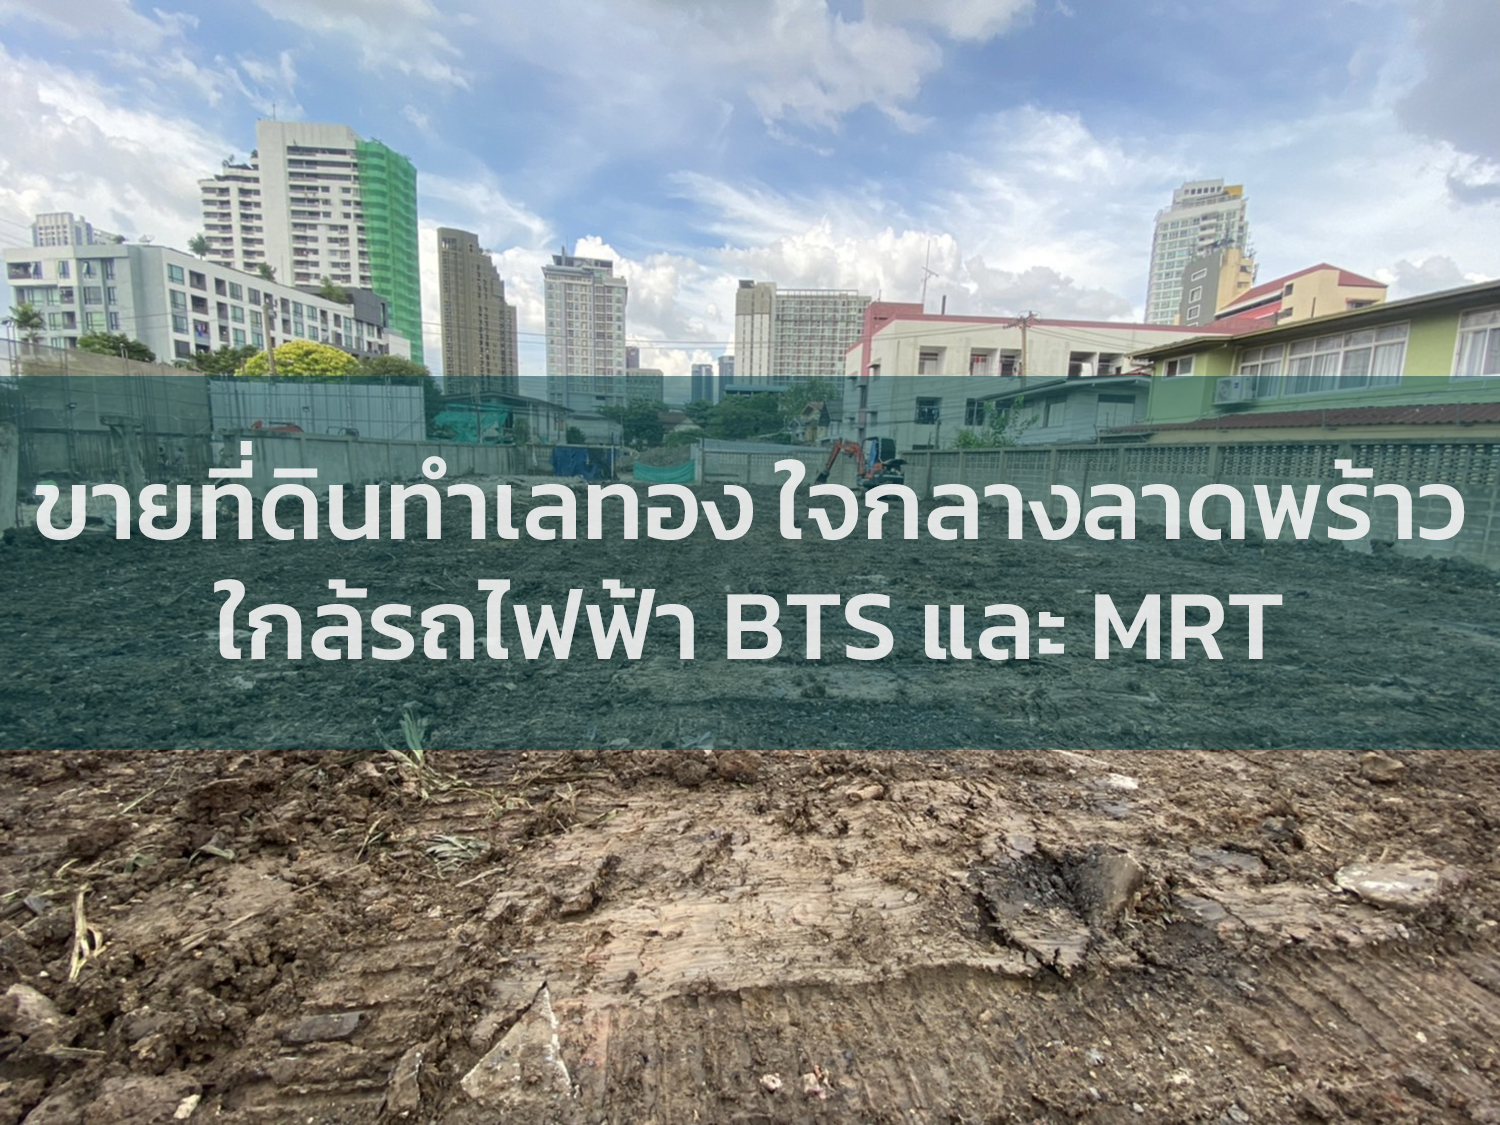 รวมประกาศขาย ที่ดินทำเลทอง ใจกลางลาดพร้าว ทำเลดีใกล้รถไฟฟ้า BTS และ MRT ที่ดินใกล้ถนนใหญ่ลาดพร้าว I Thailandbangkokproperty